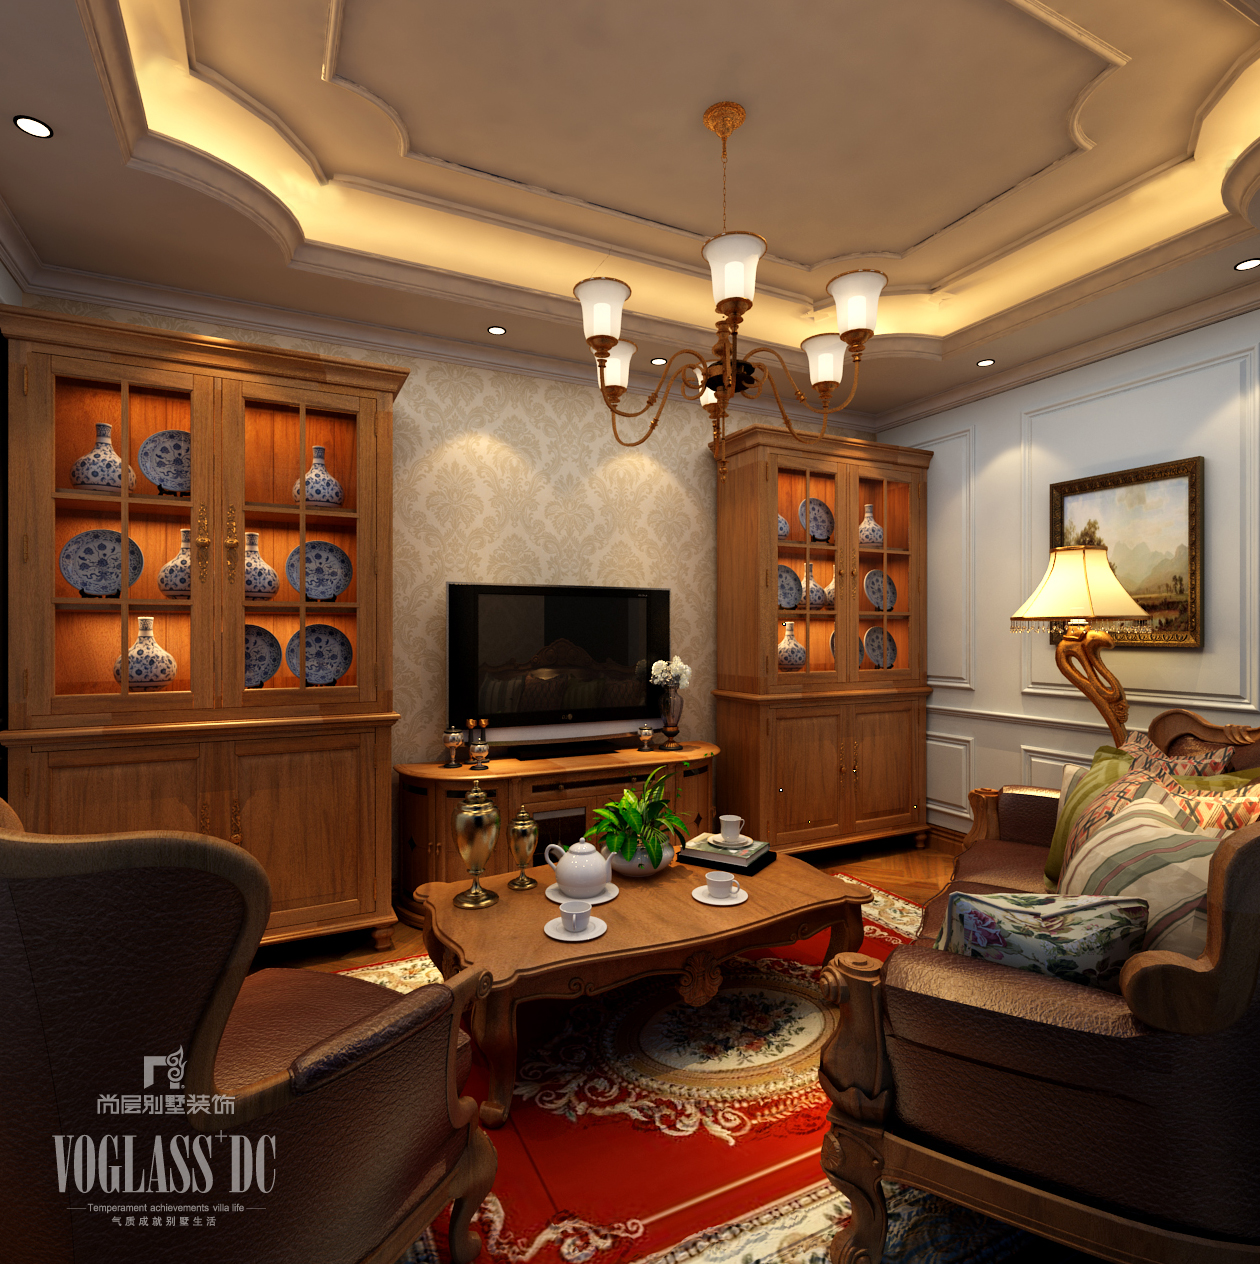 别墅 客厅图片来自天津尚层装修韩政在博雅苑美式风格设计的分享